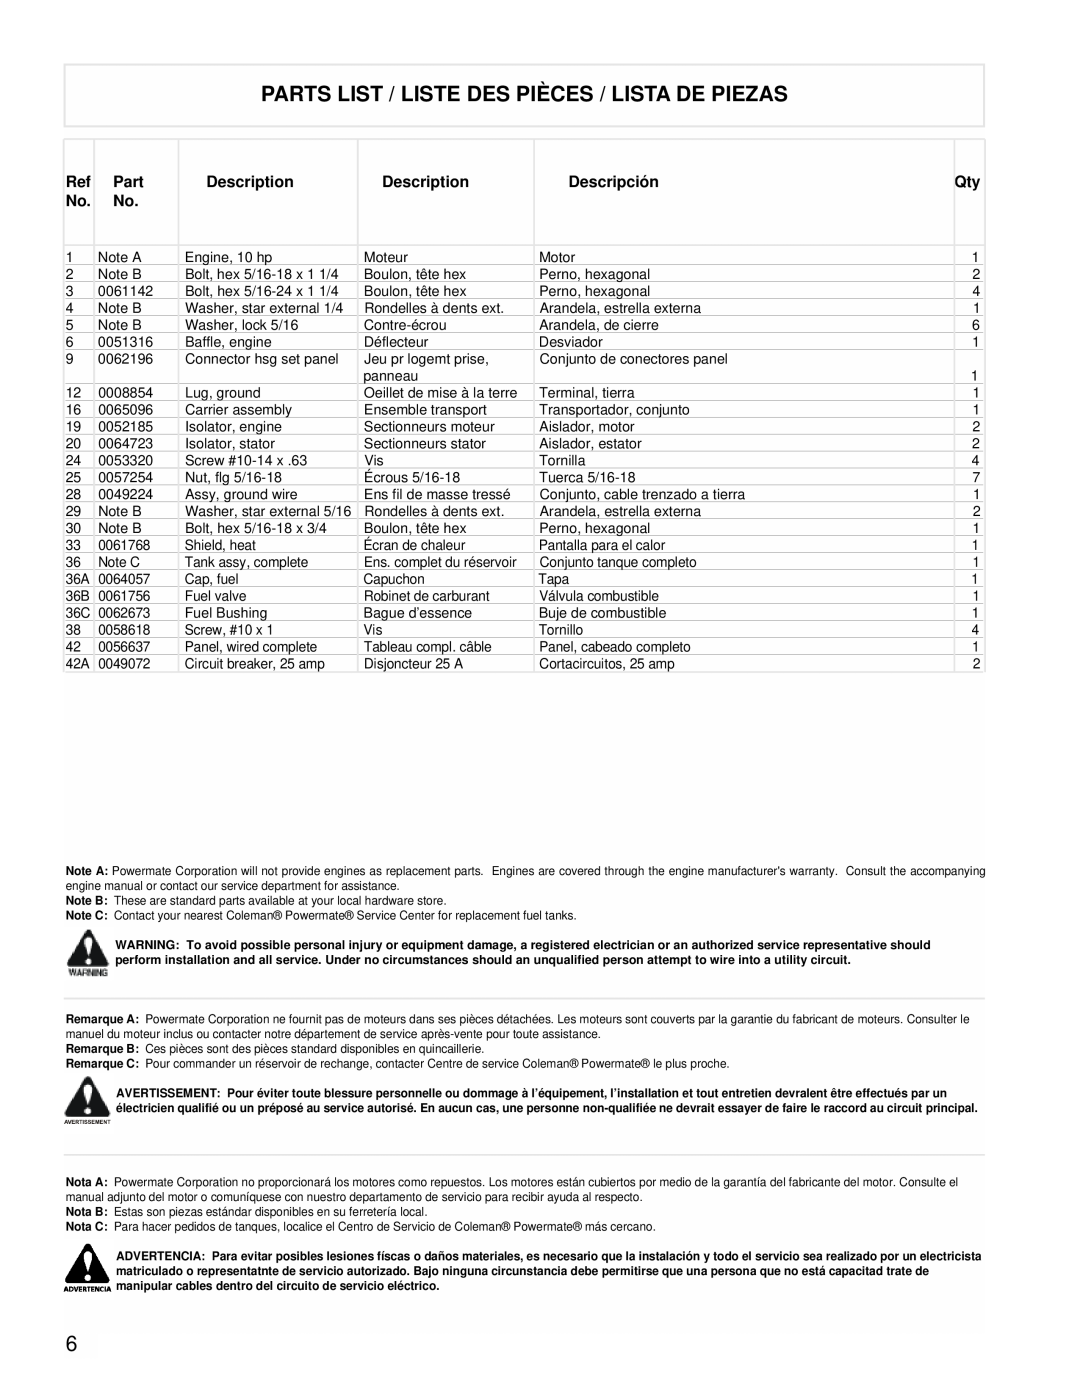 Powermate PMA525302.03 manual Parts List / Liste Des Pièces / Lista De Piezas, Description, Descripción 